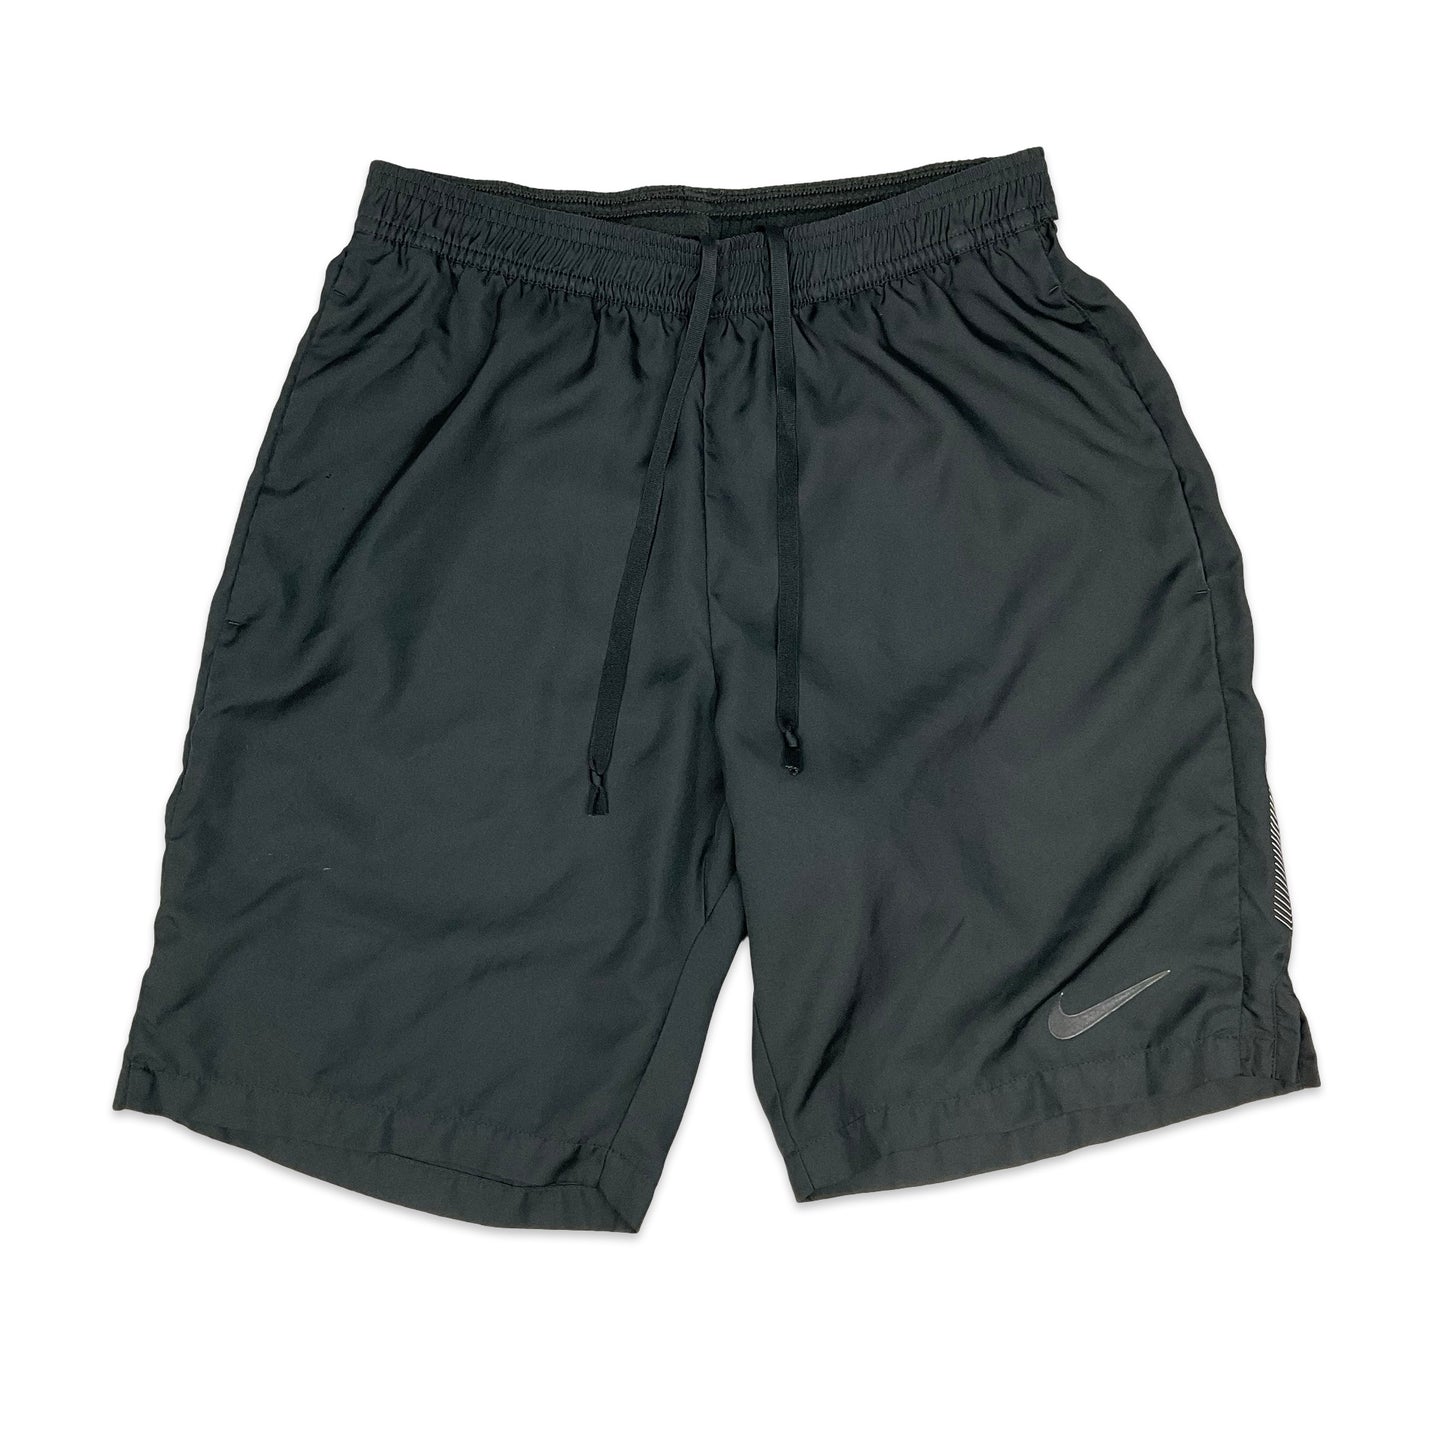 Preloved Black Nike Shorts XS S